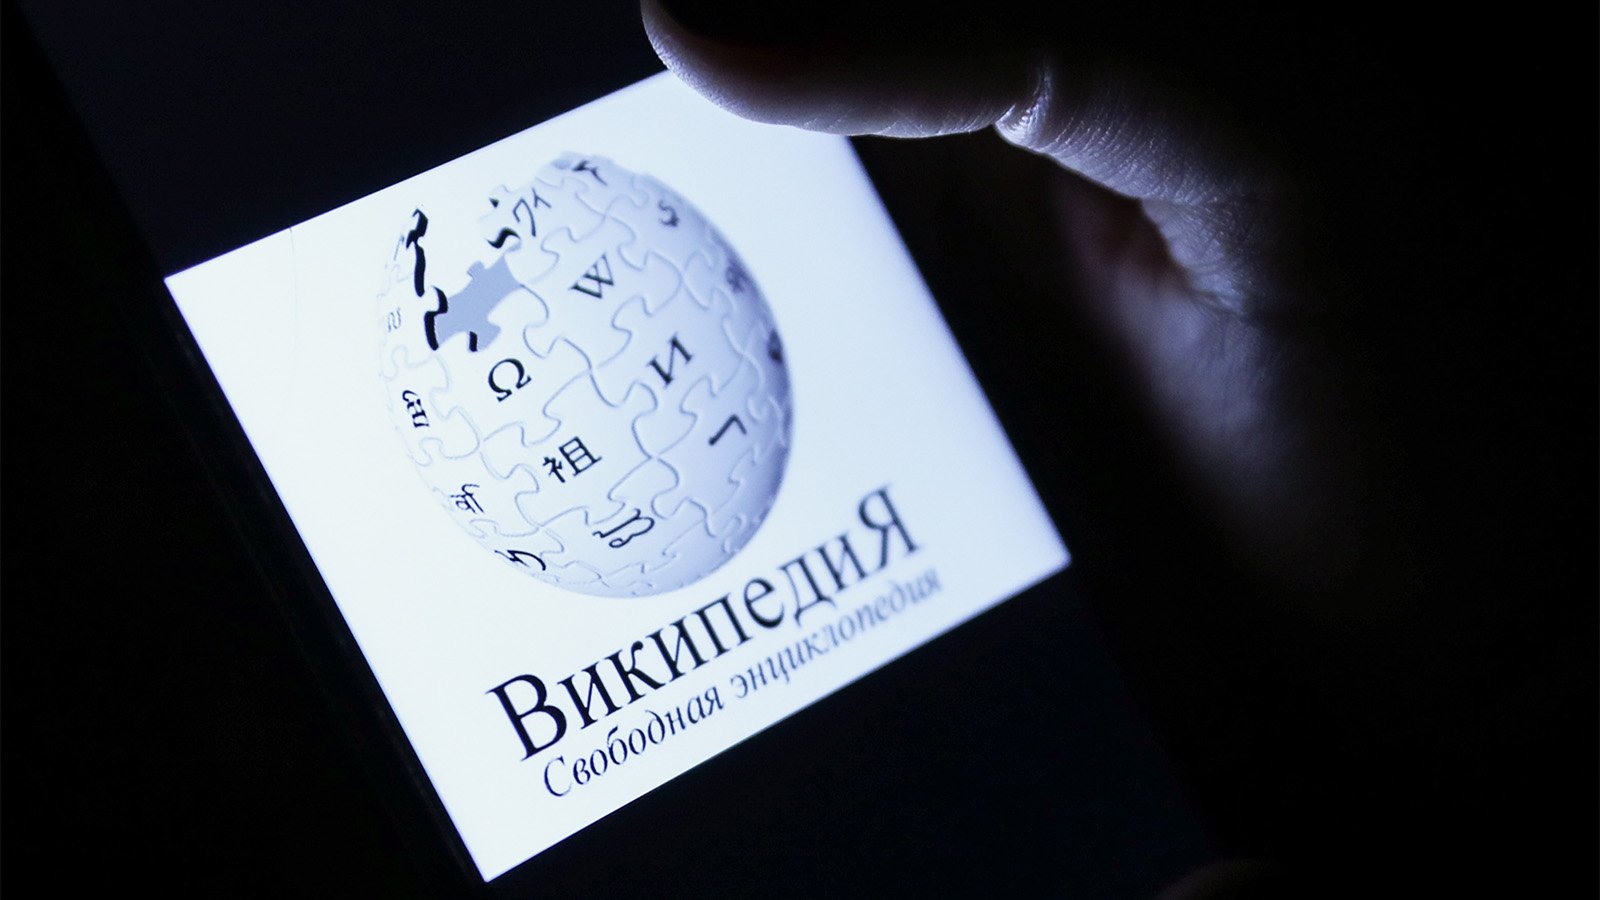 Російська еліта зачищає у Вікіпедії дані про санкції, зв’язки з Кремлем, майно та громадянство РФ 